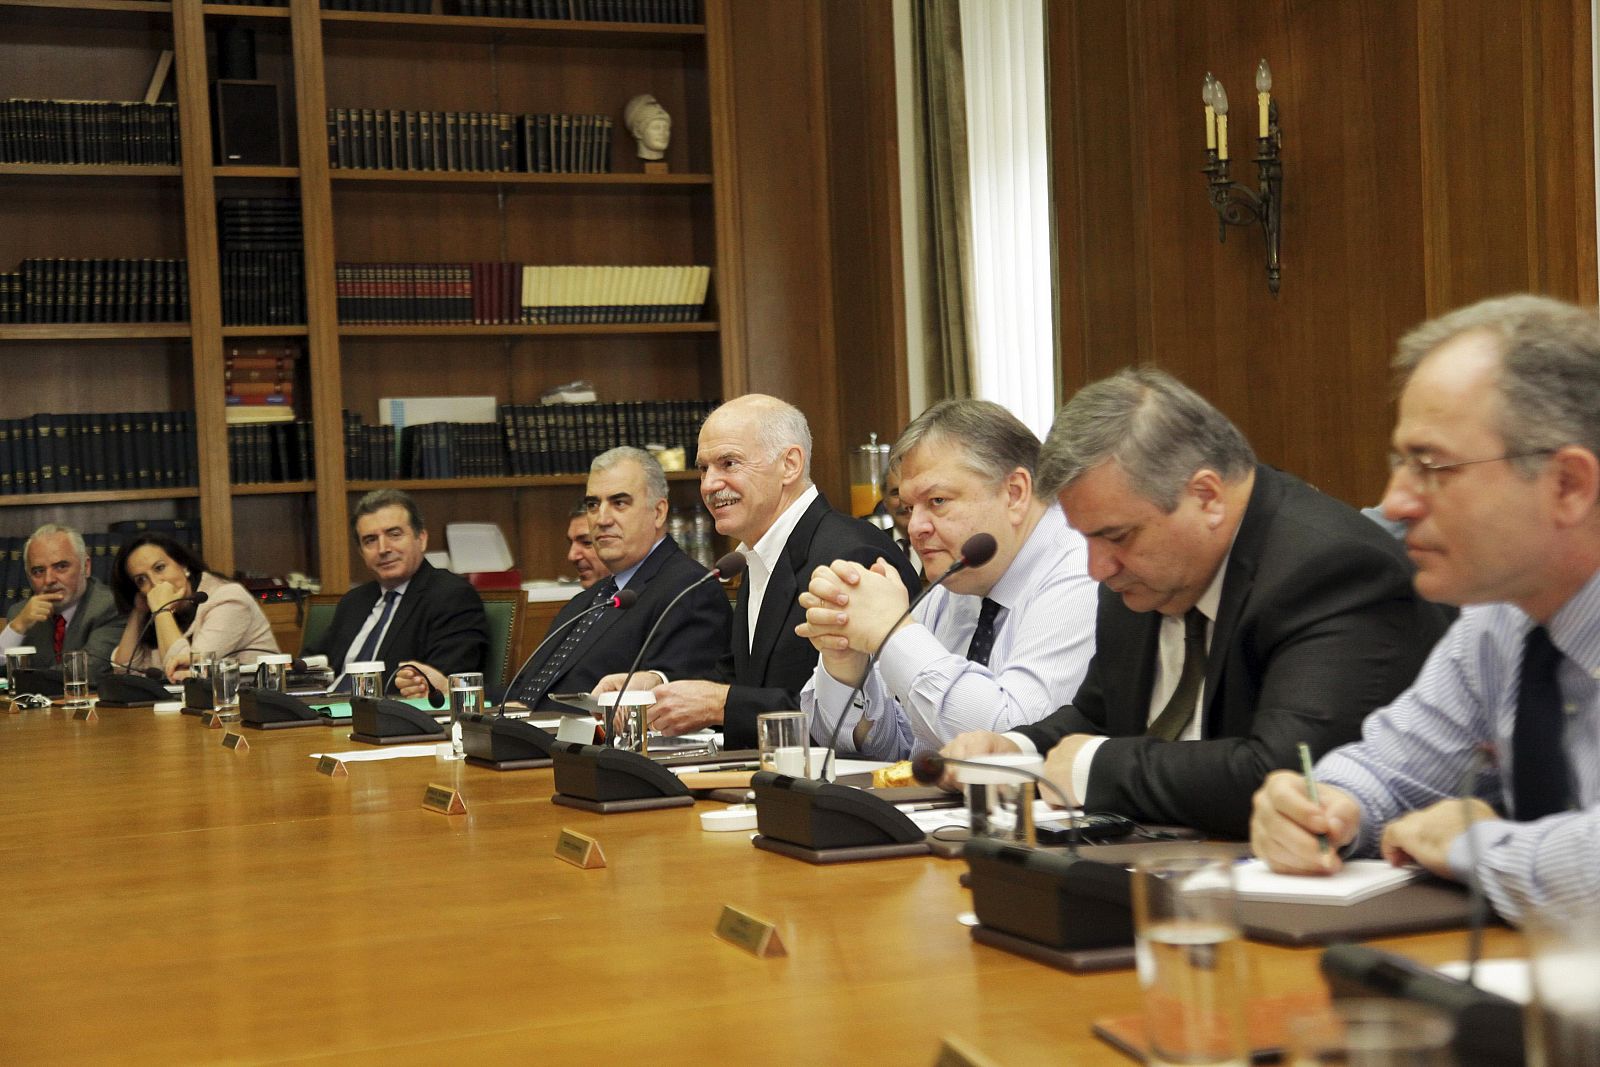 Papandréu en la que podría ser la última reunión con su Ejecutivo como primer ministro de Grecia